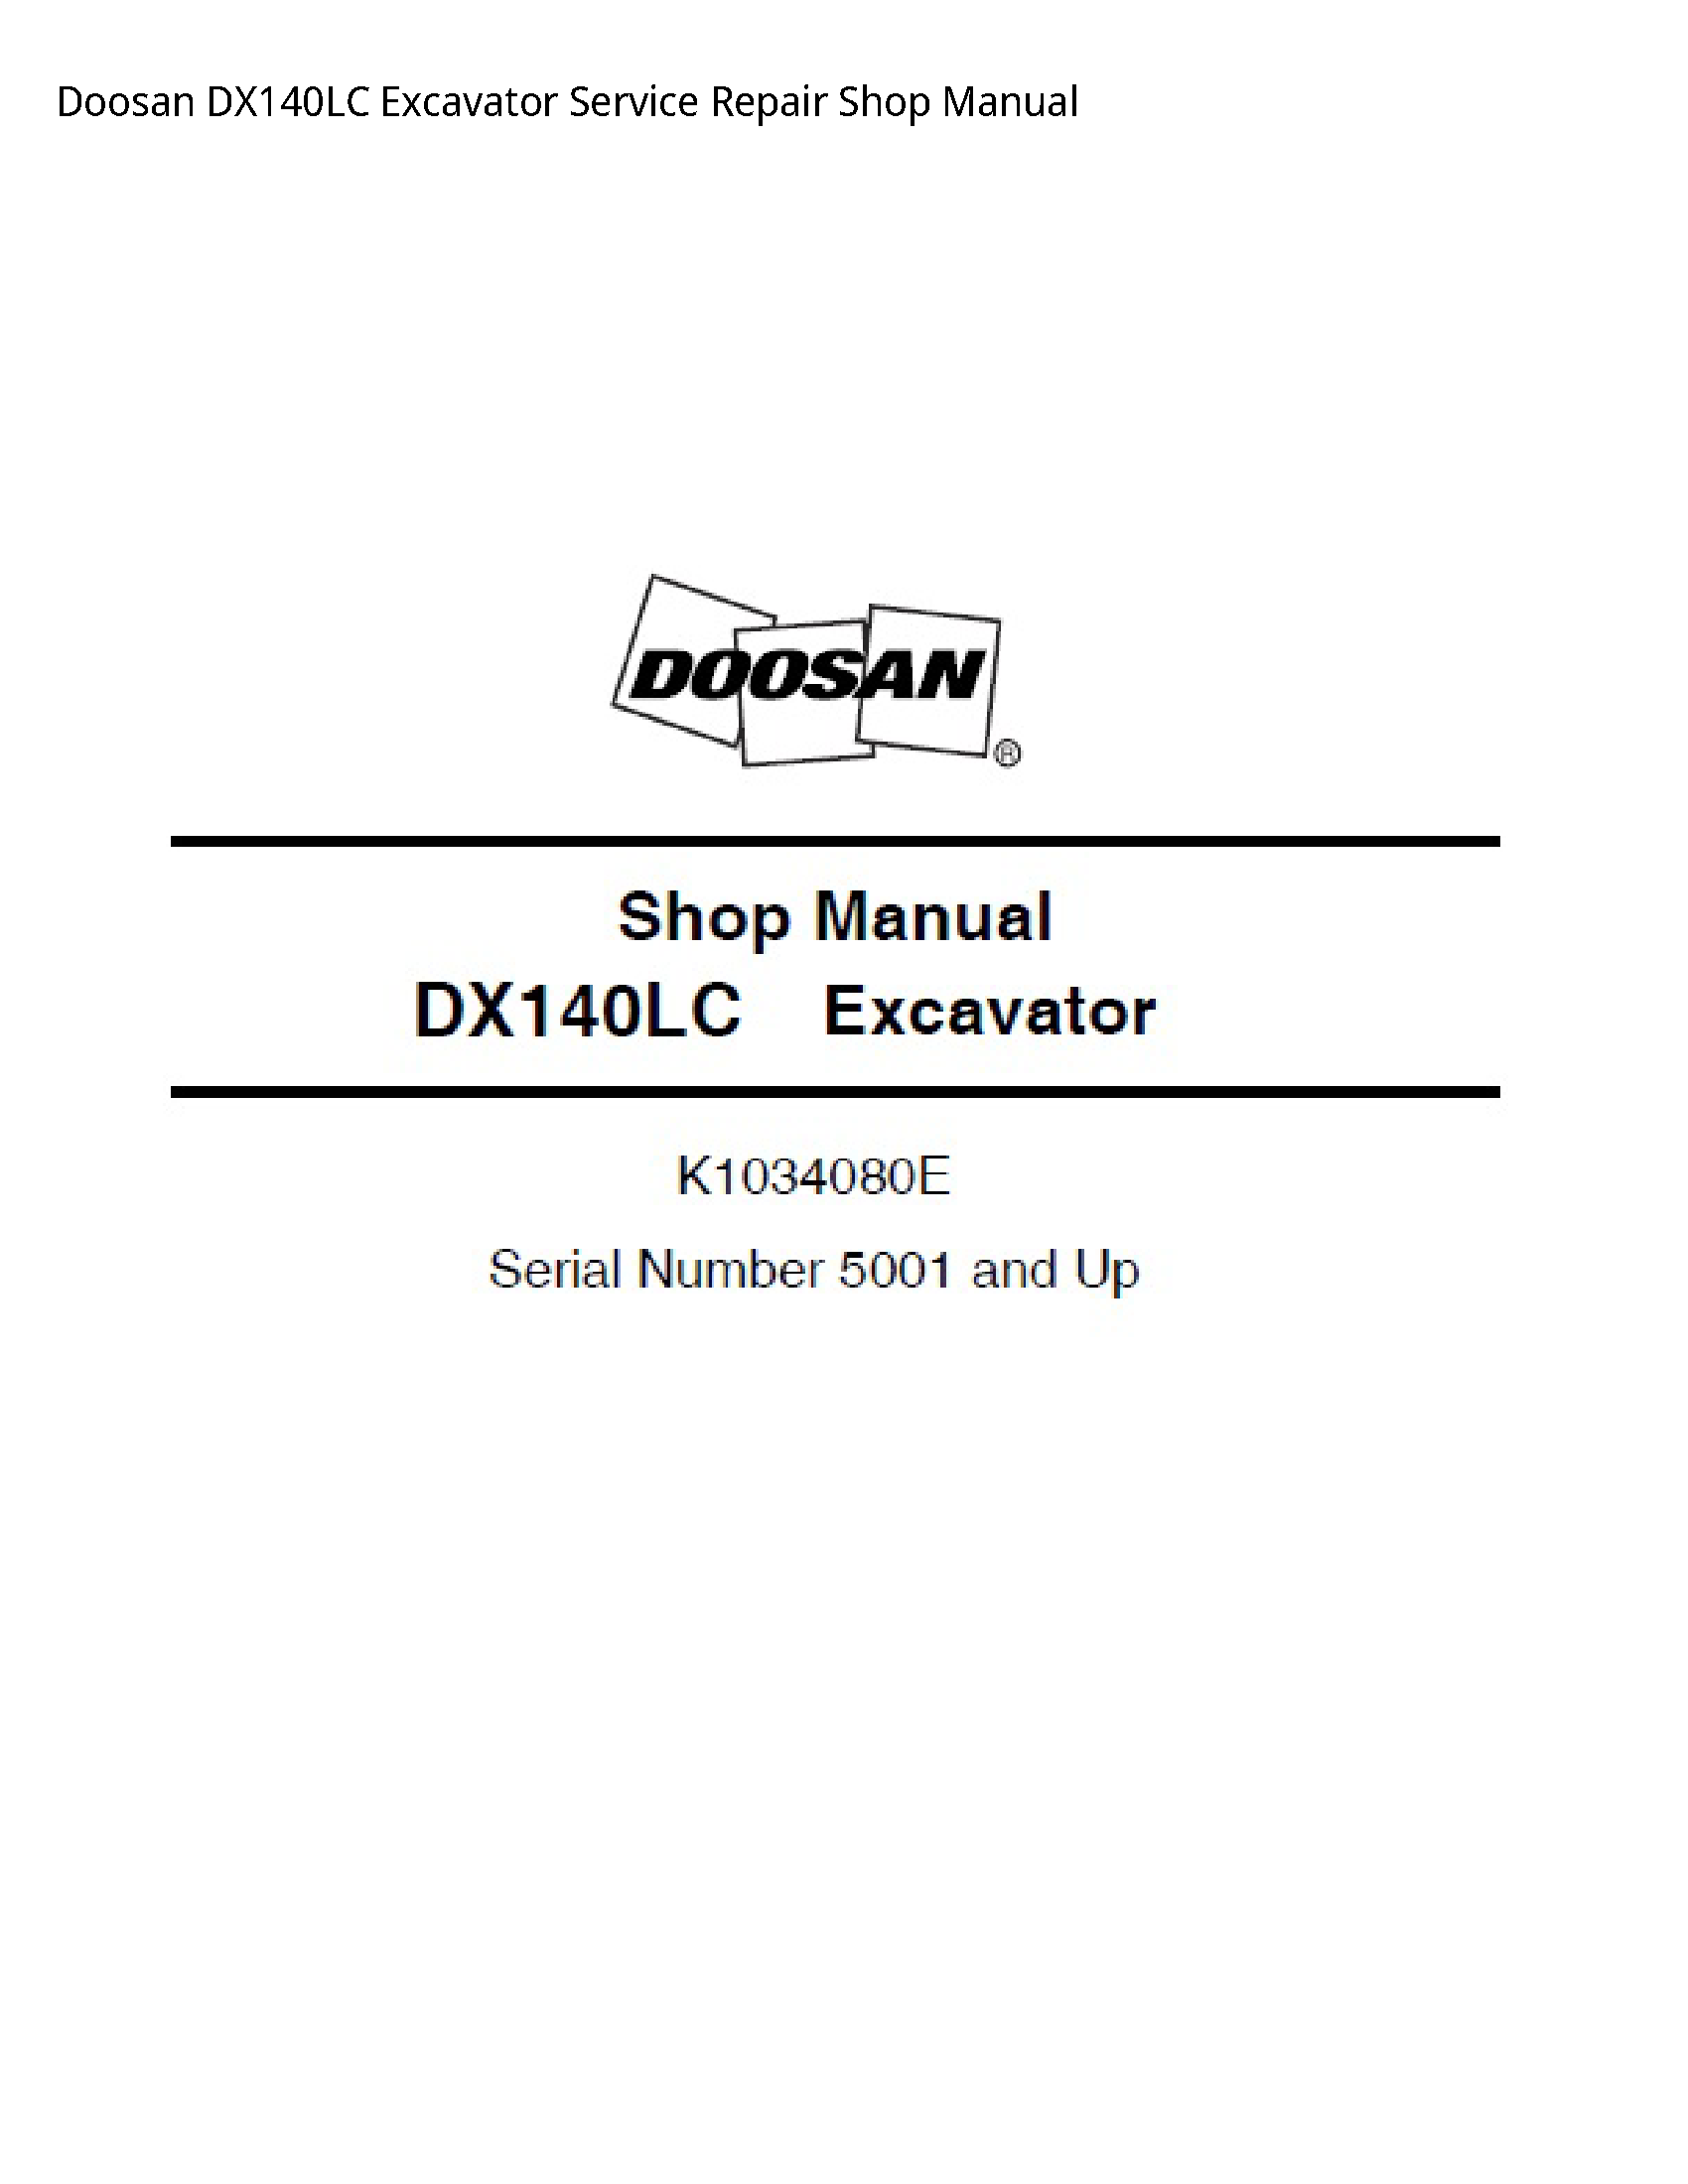 Doosan DX140LC Excavator manual